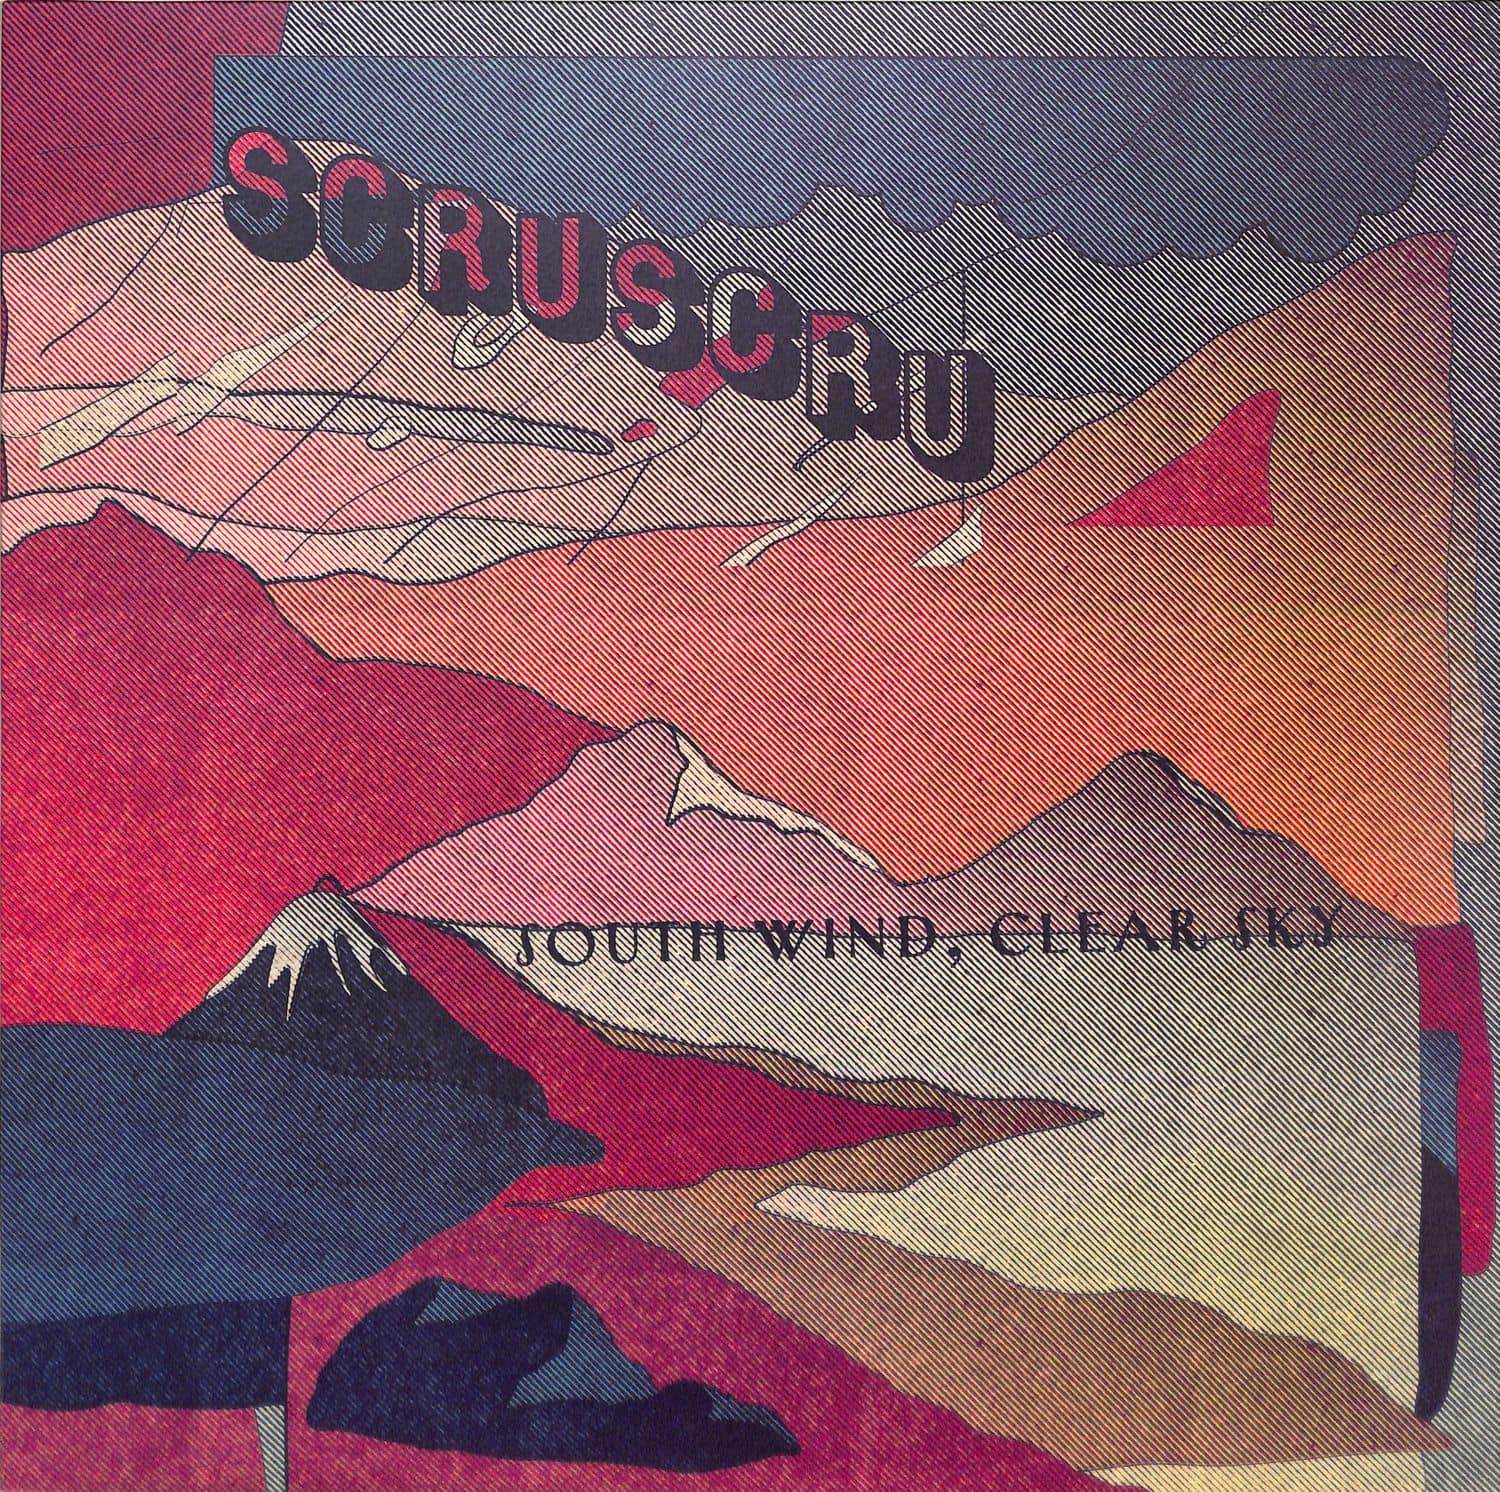 Scruscru - SOUTH WIND, CLEAR SKY